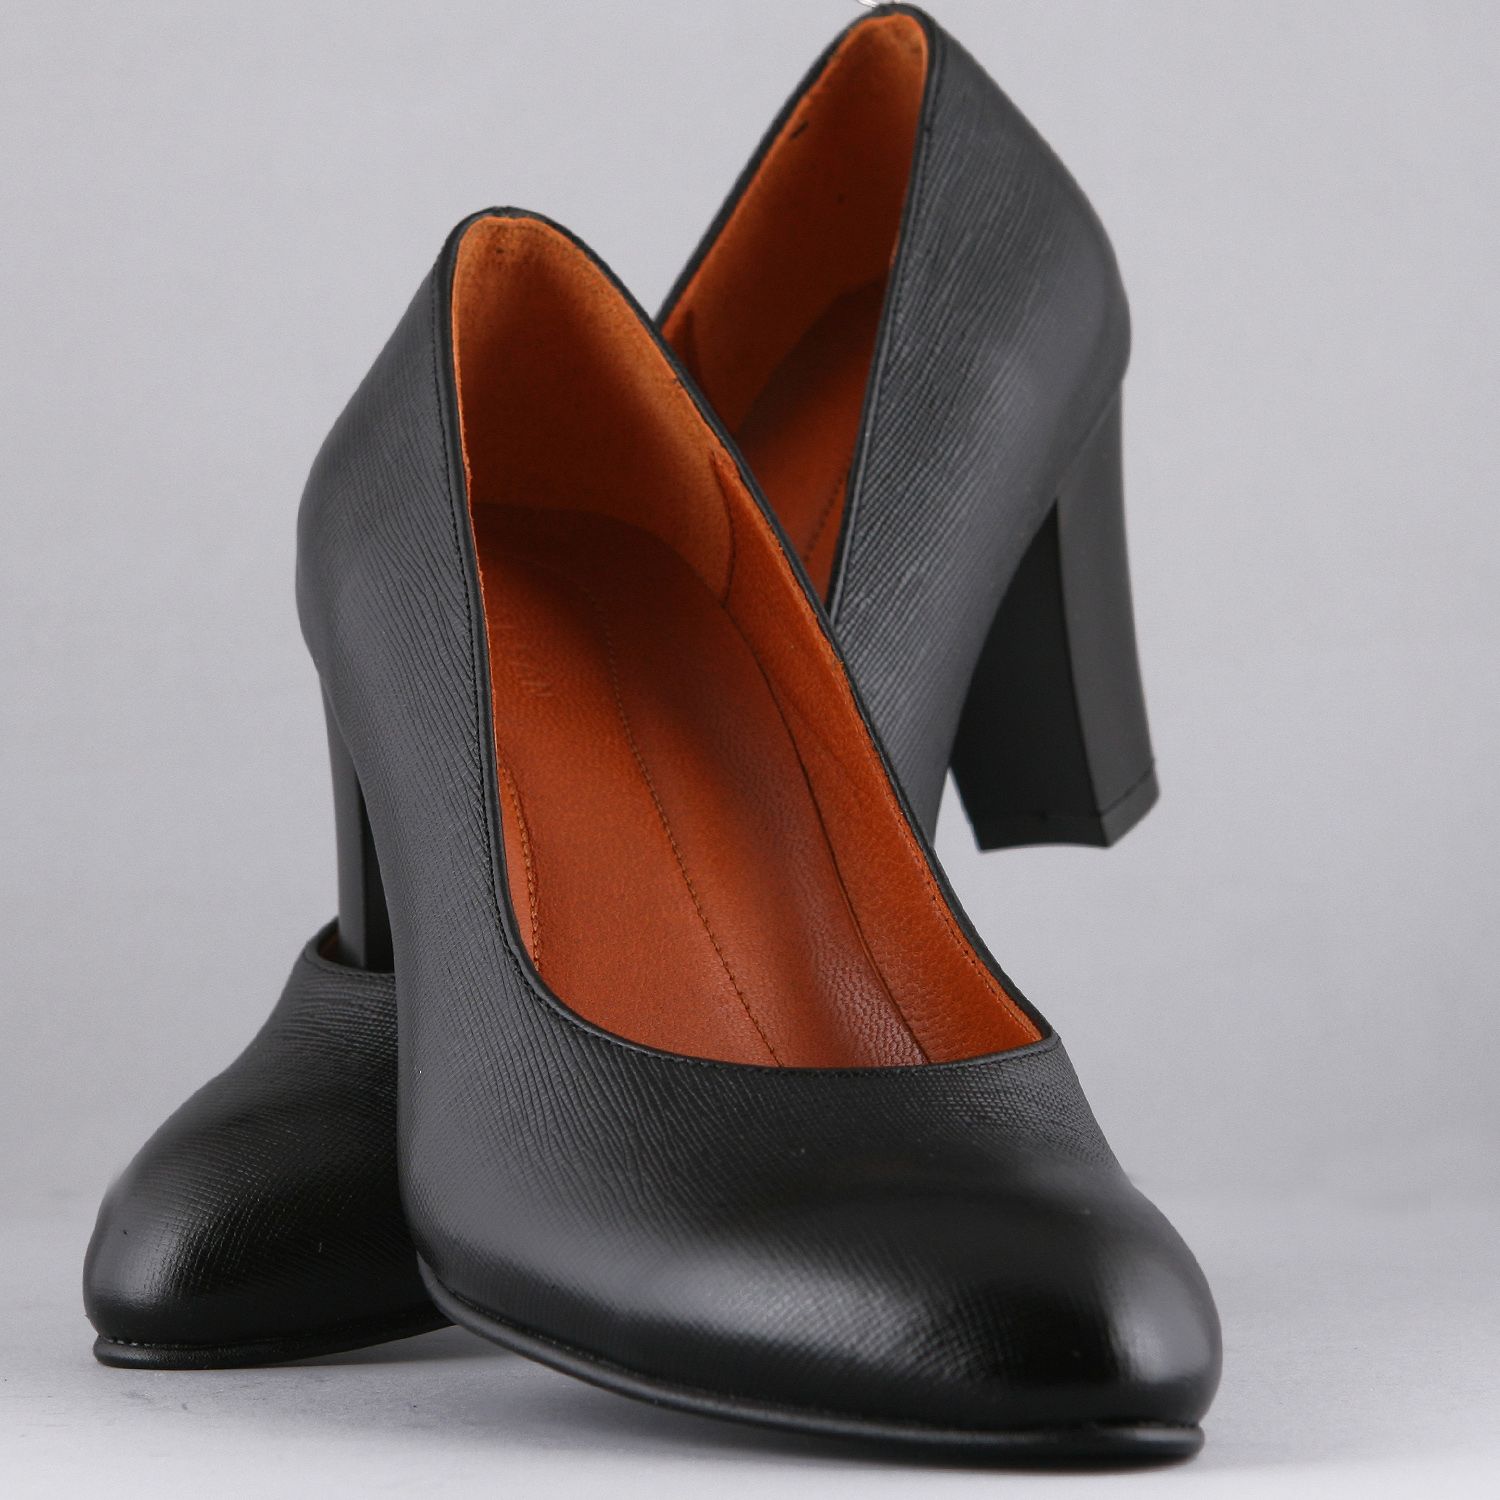 ست کیف و کفش زنانه چرم یلسان مدل مارال کد ANA-HRM-901-msk -  - 19